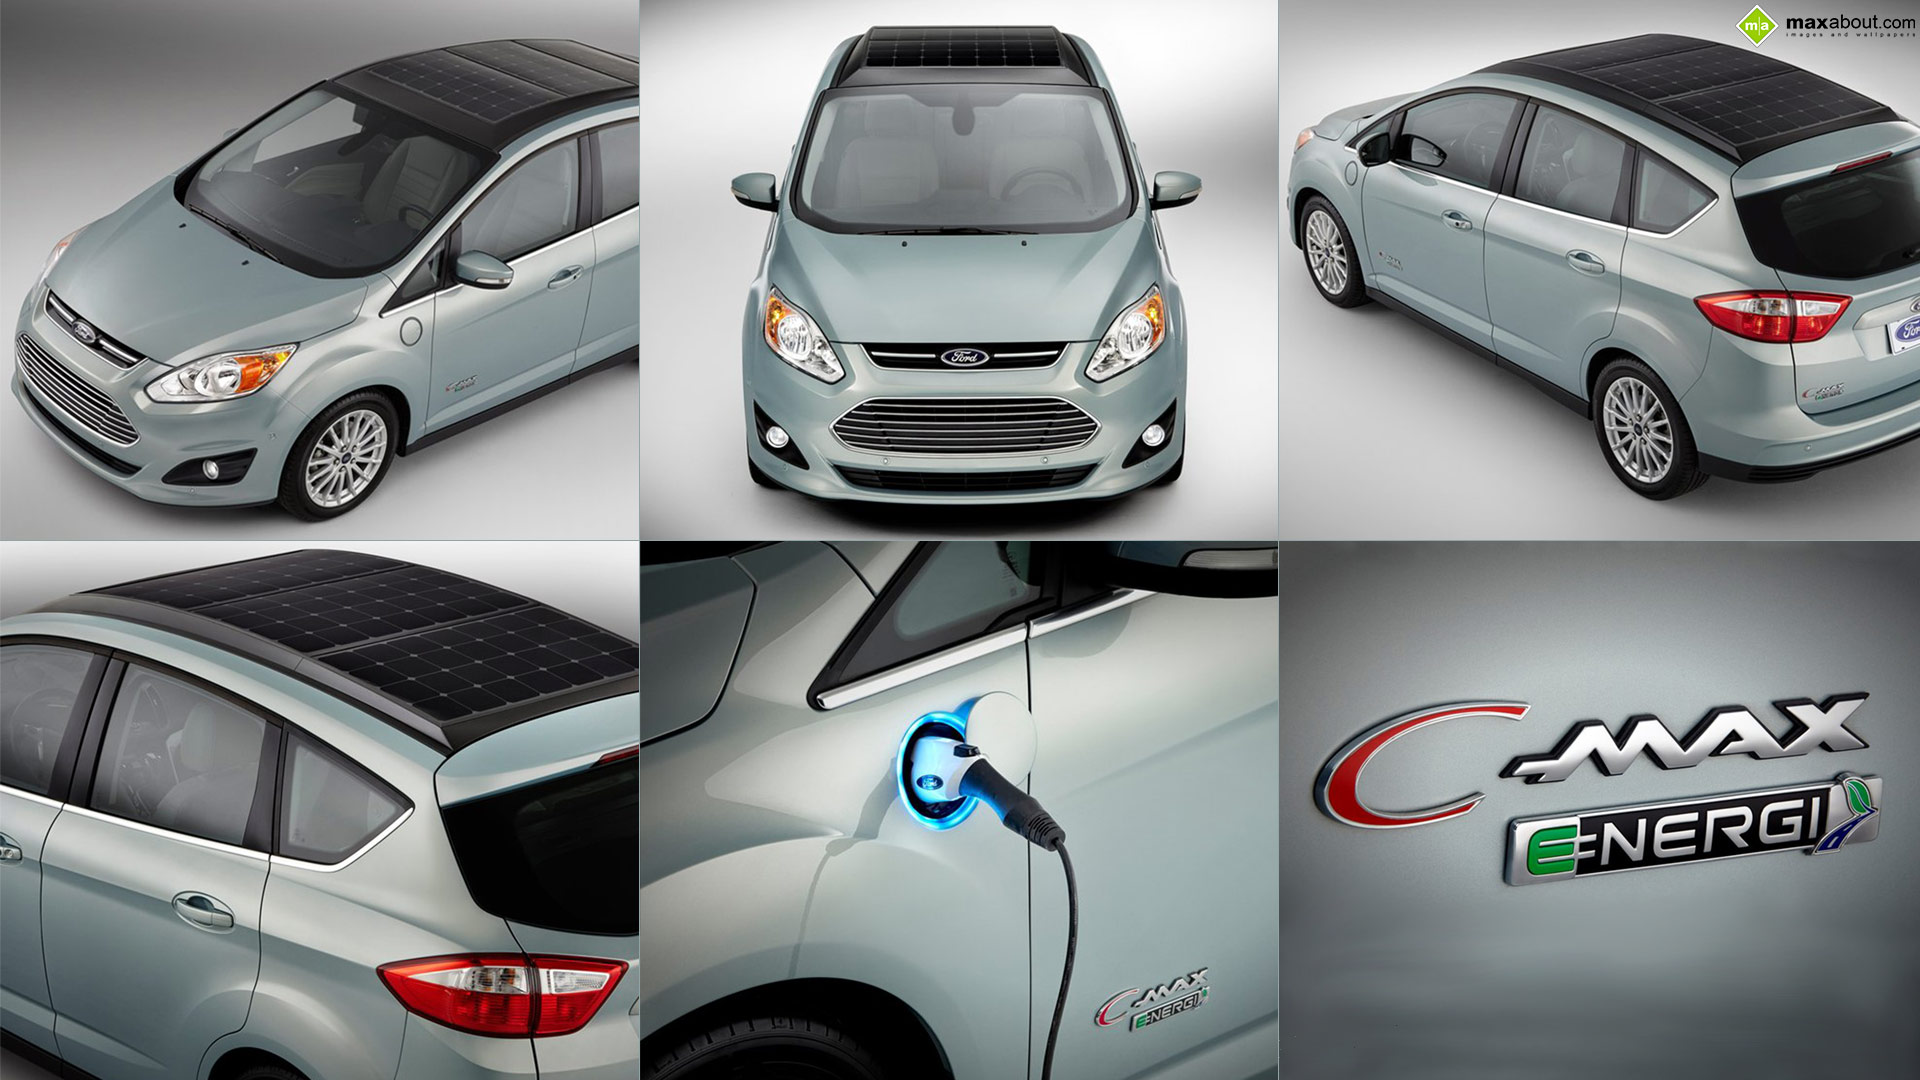 C-max solar energi concept de ford